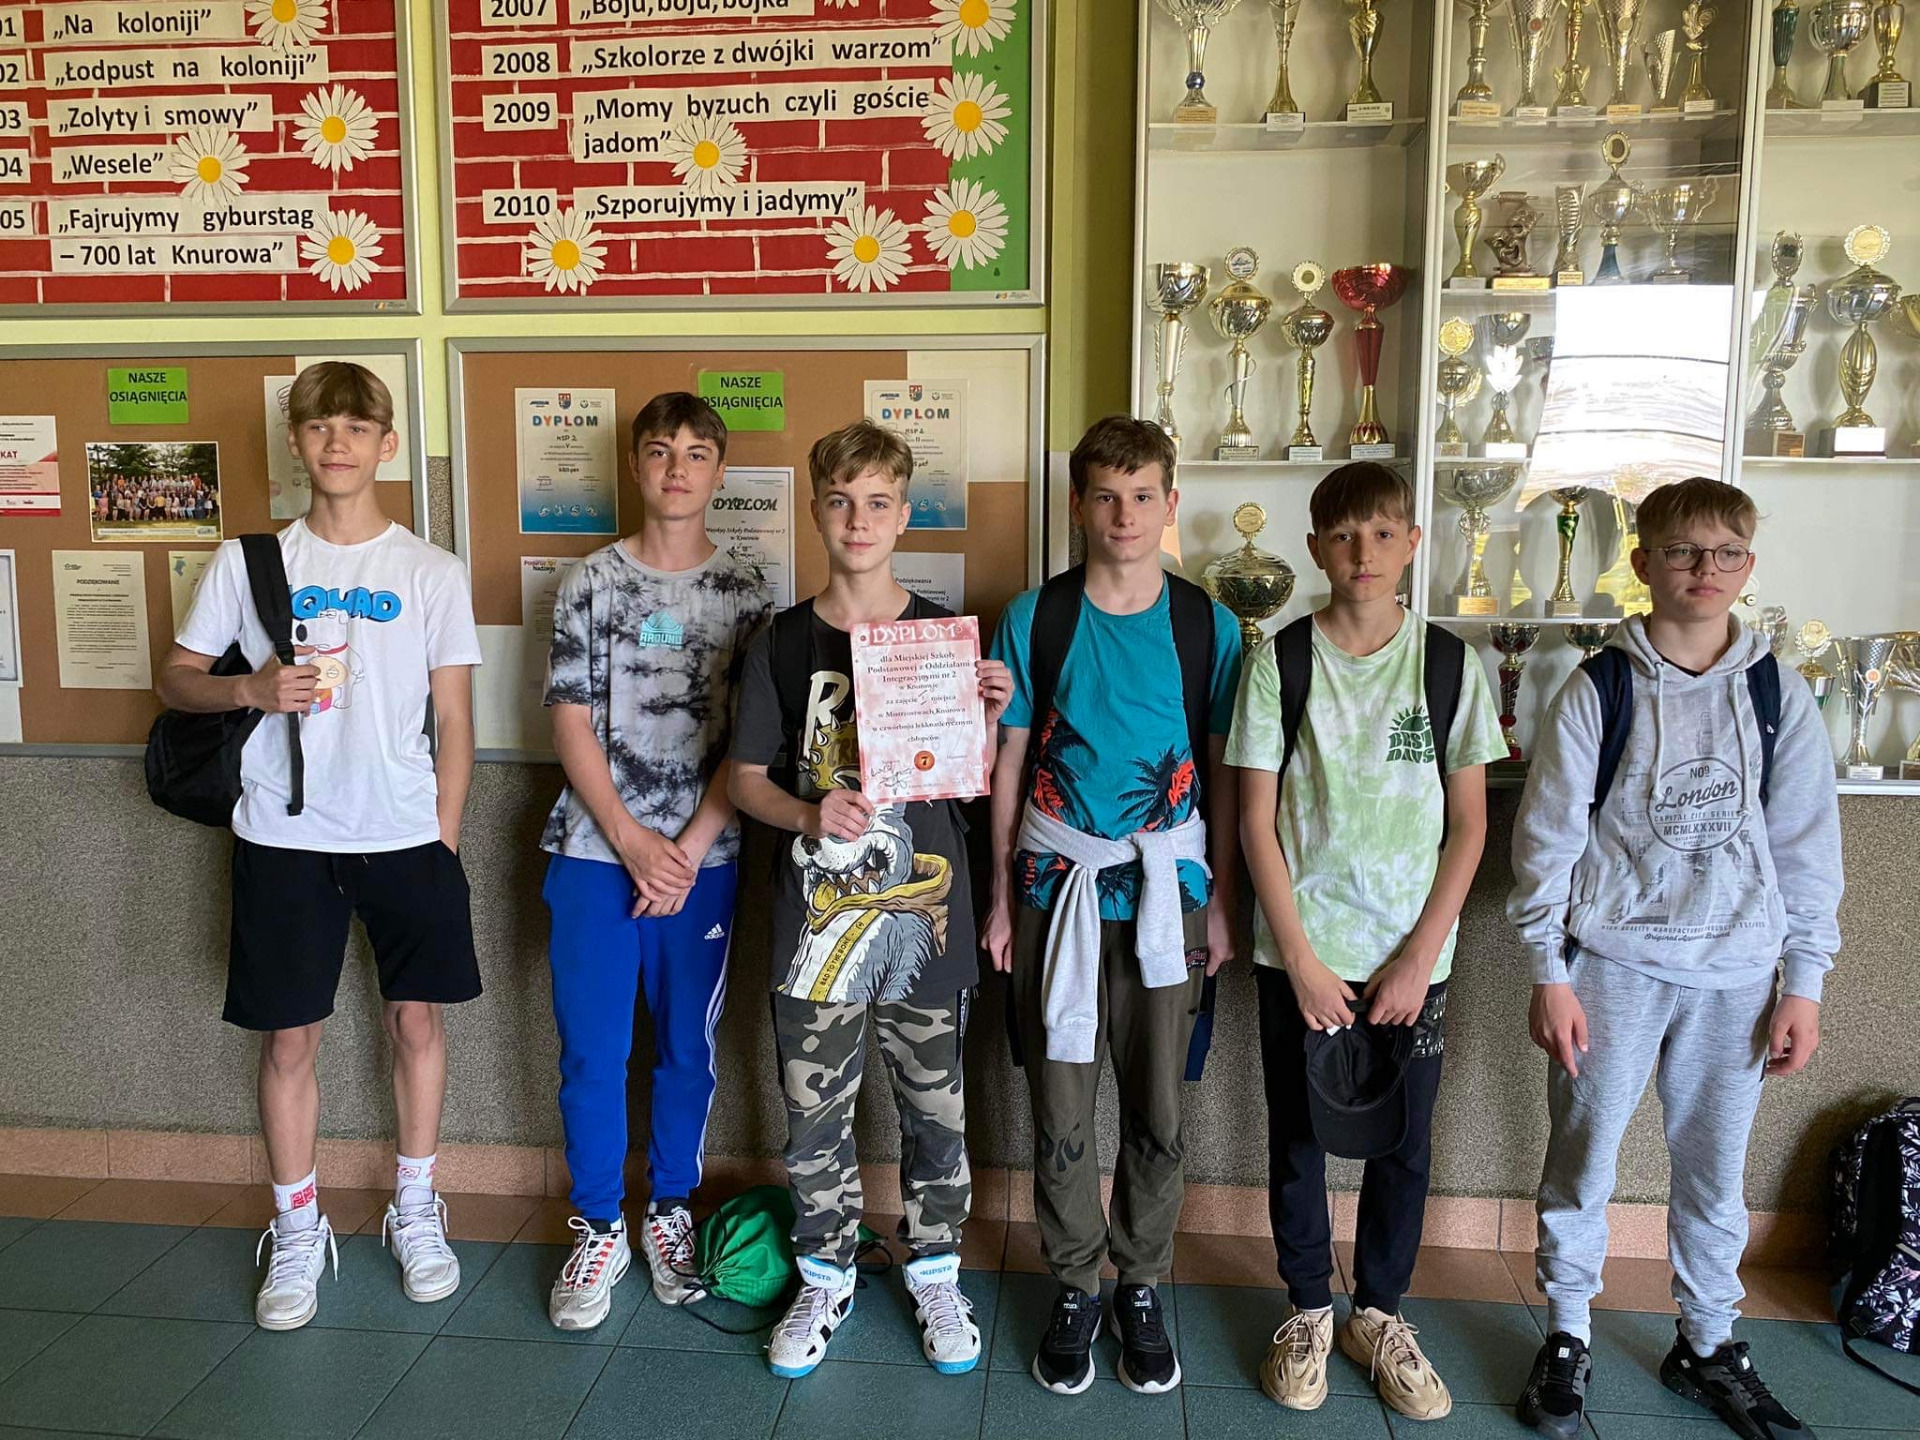 Grupa chłopców trzyma dyplom za zajęcie I miejsca w zawodach.